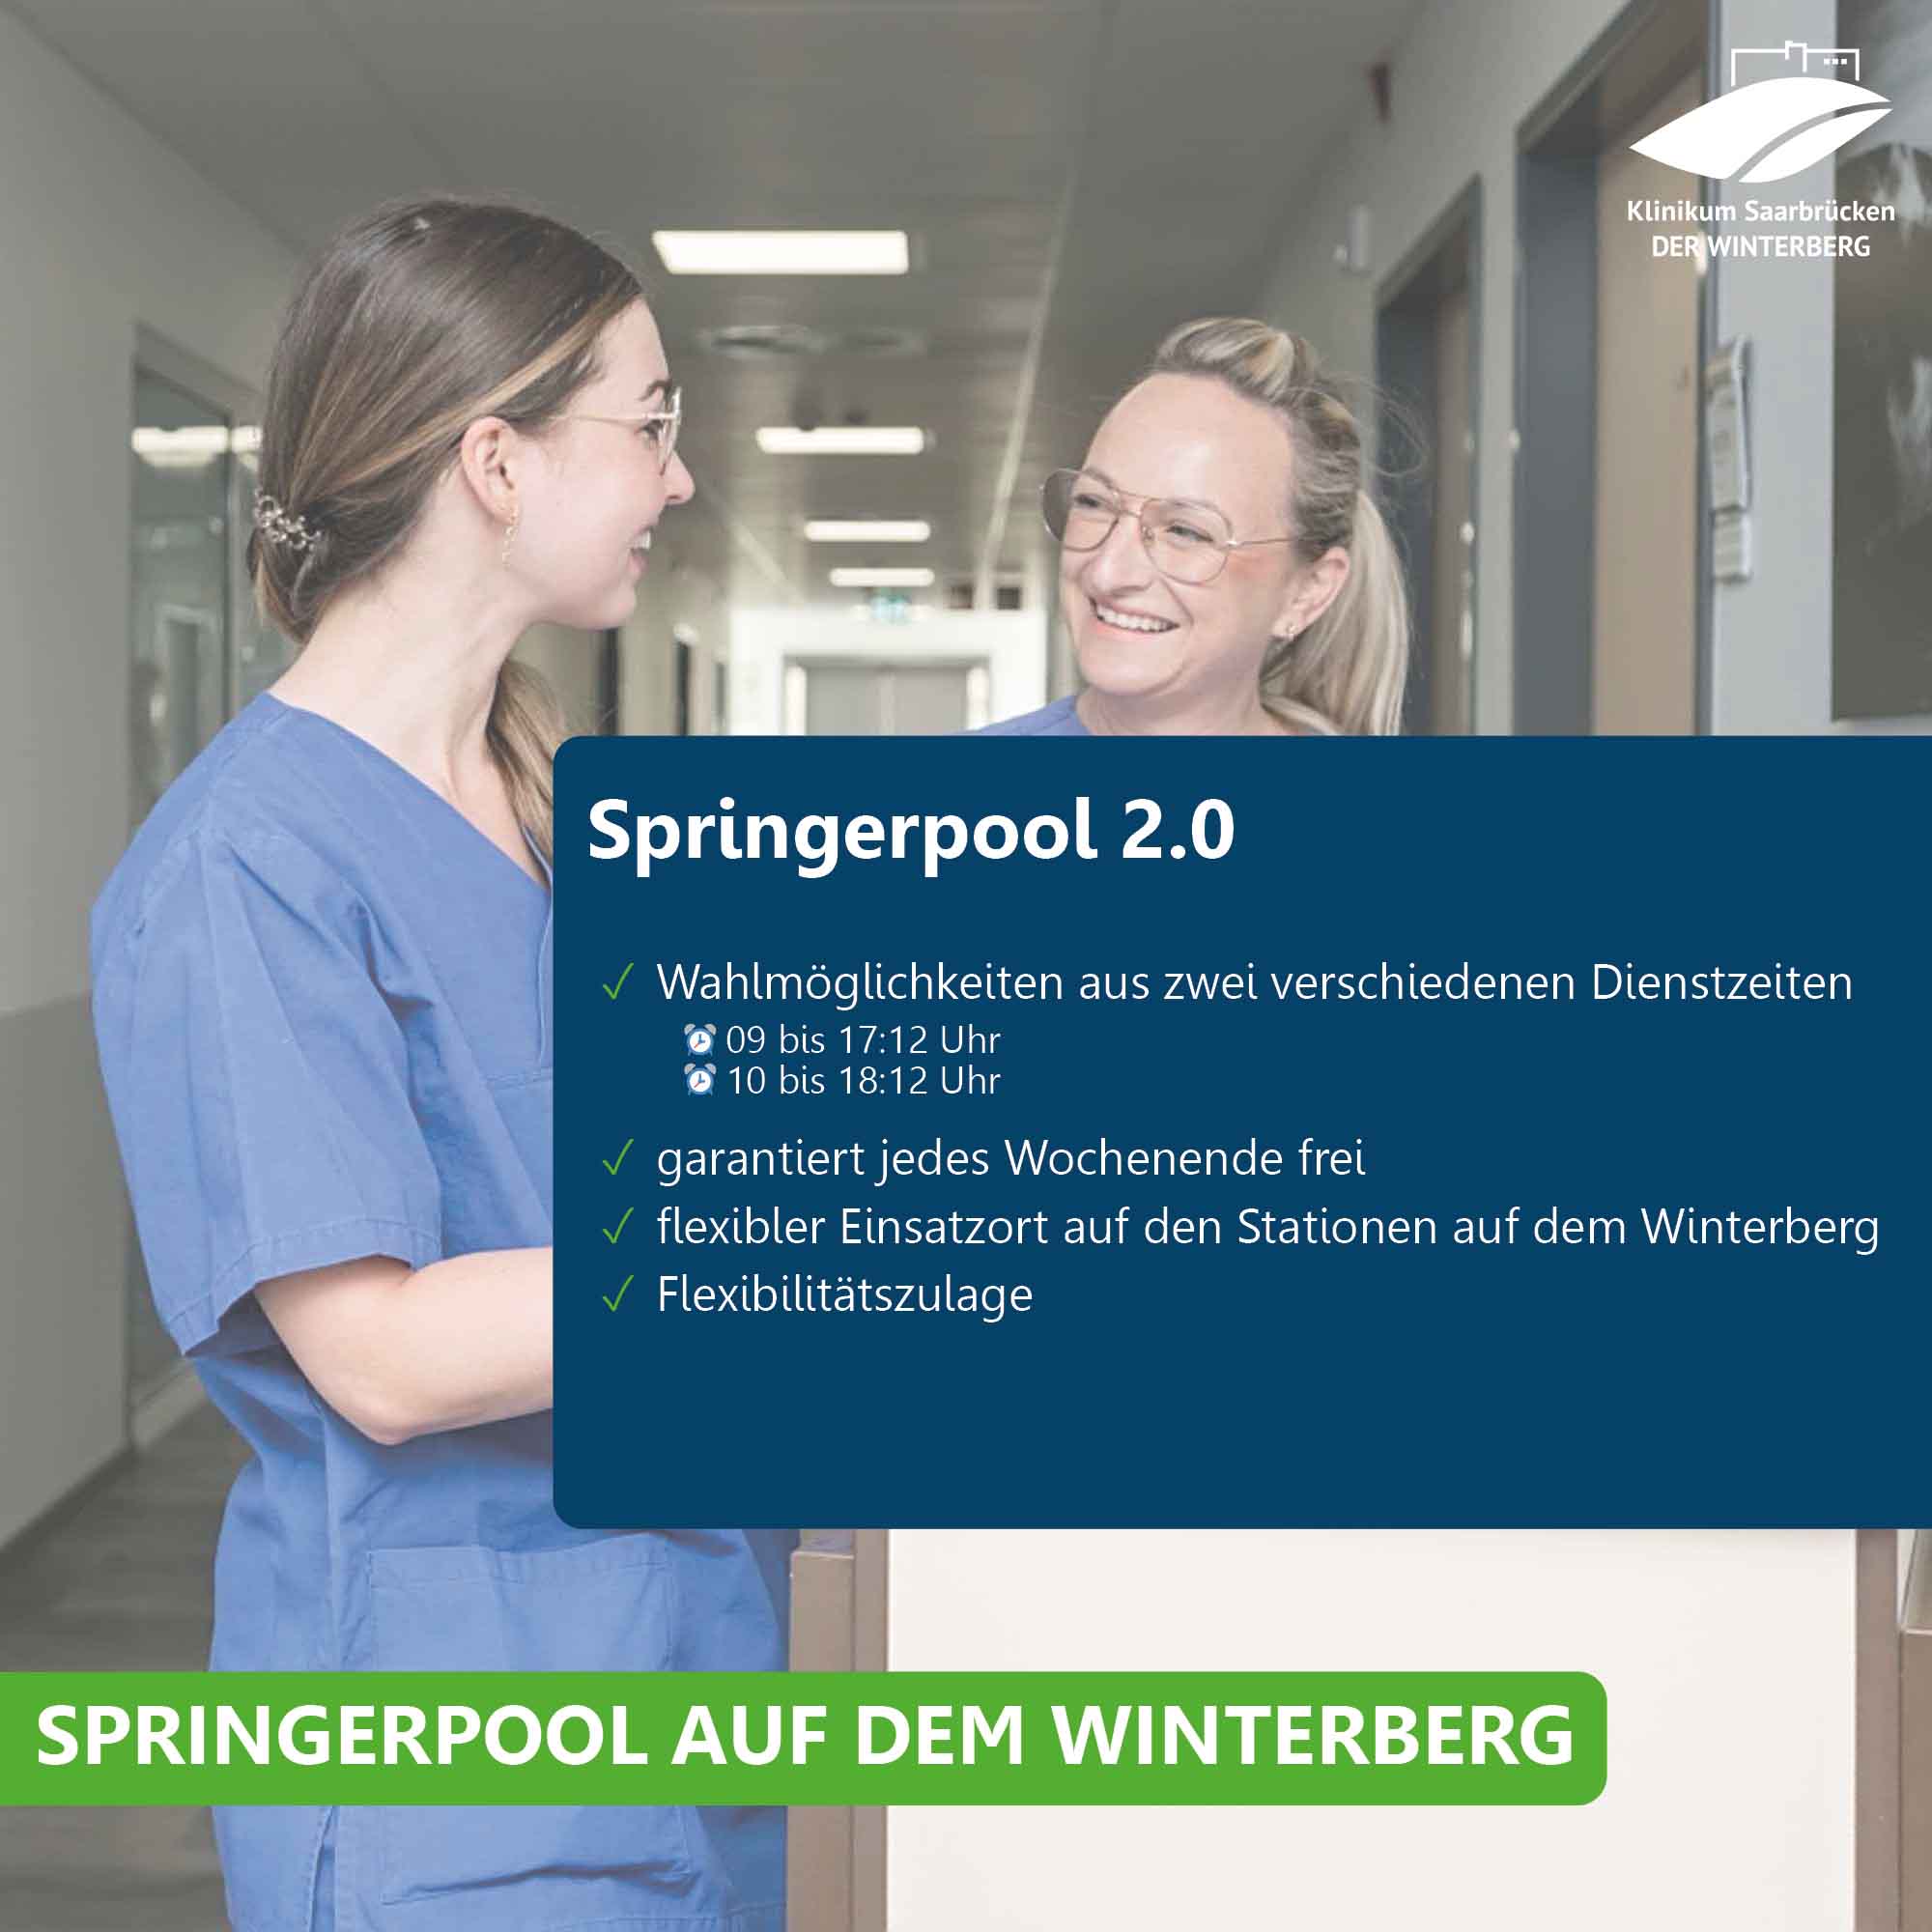 Pflegekräfte im Klinikum Saarbrücken und Übersicht über das Angebot im Springerpool 2.0